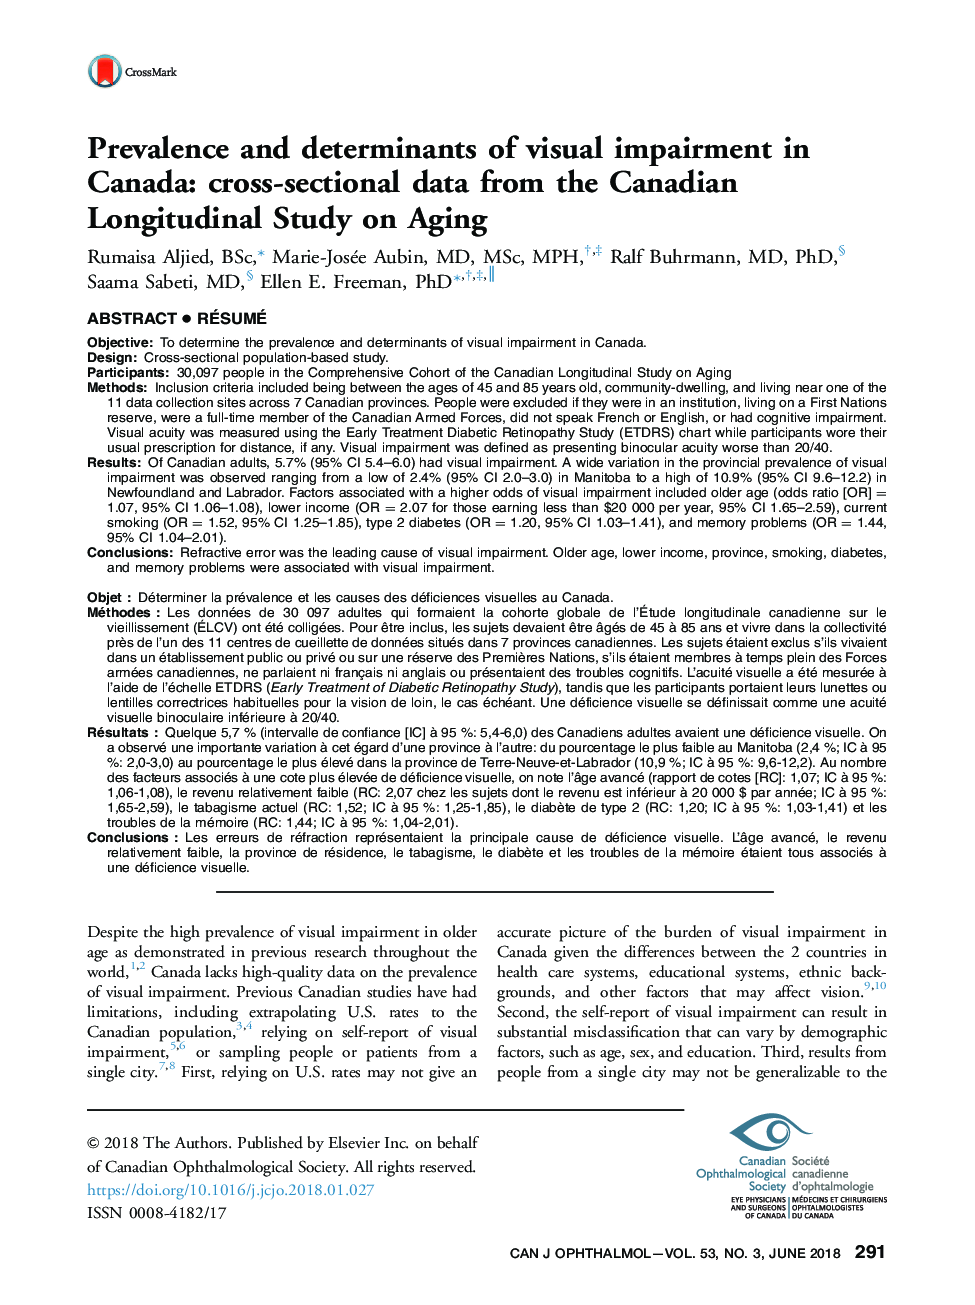 شیوع و عوامل تعیین کننده اختلال بینایی در کانادا: داده های مقطعی از مطالعه طولی کانادایی پیری 